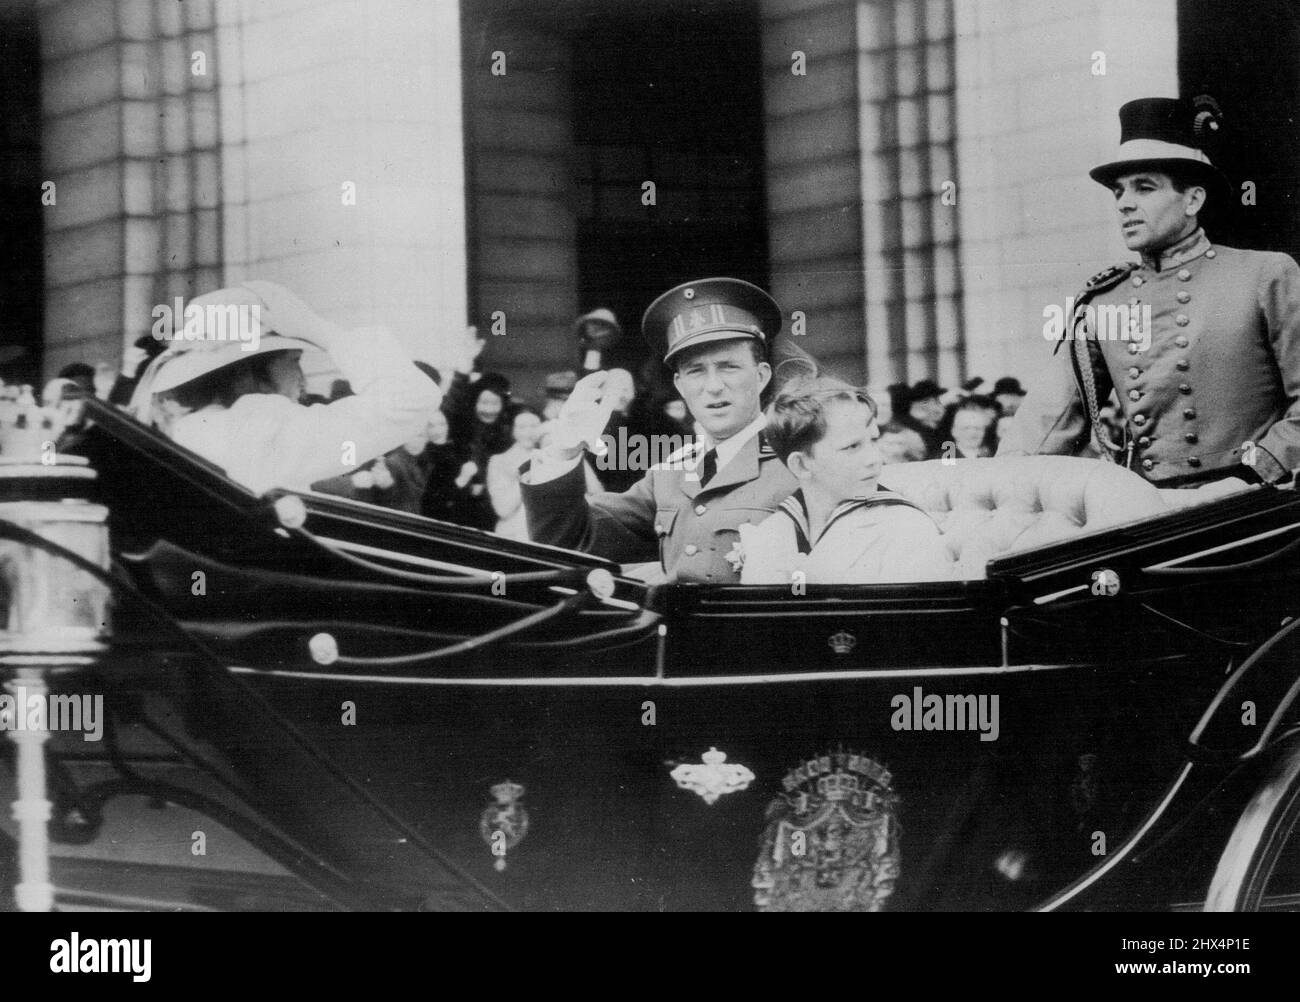 El rey Leopold y sus hijos se remonotan a la feria de caballos. El rey Leopold de los belgas y sus dos hijos, el príncipe Baudouin y la princesa Josephine Charlotte, mientras conducían en un carro abierto al Palais du Centenaire, Bruselas, para asistir al espectáculo de caballos. 14 de mayo de 1939. Foto de stock